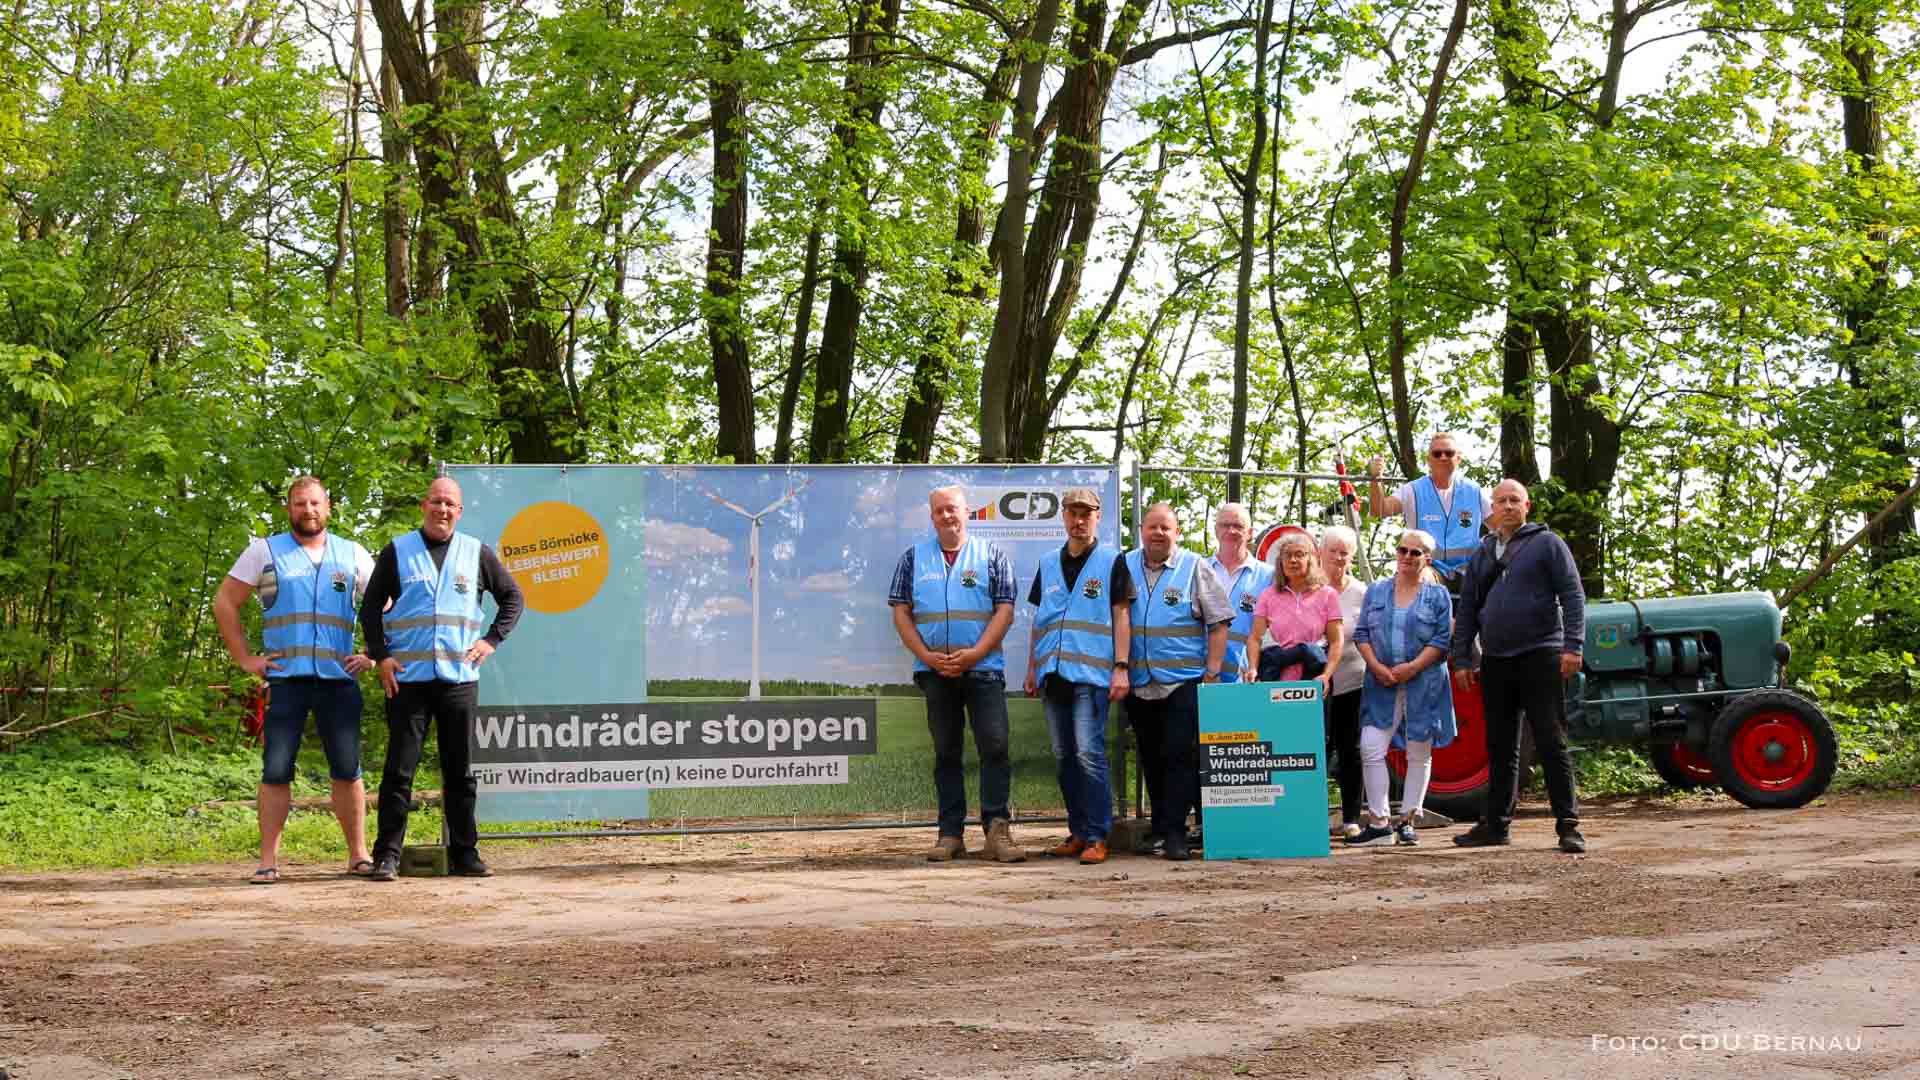 Solidarität mit Börnicke - CDU Bernau setzt Stopp-Zeichen für Windradbauer(n)